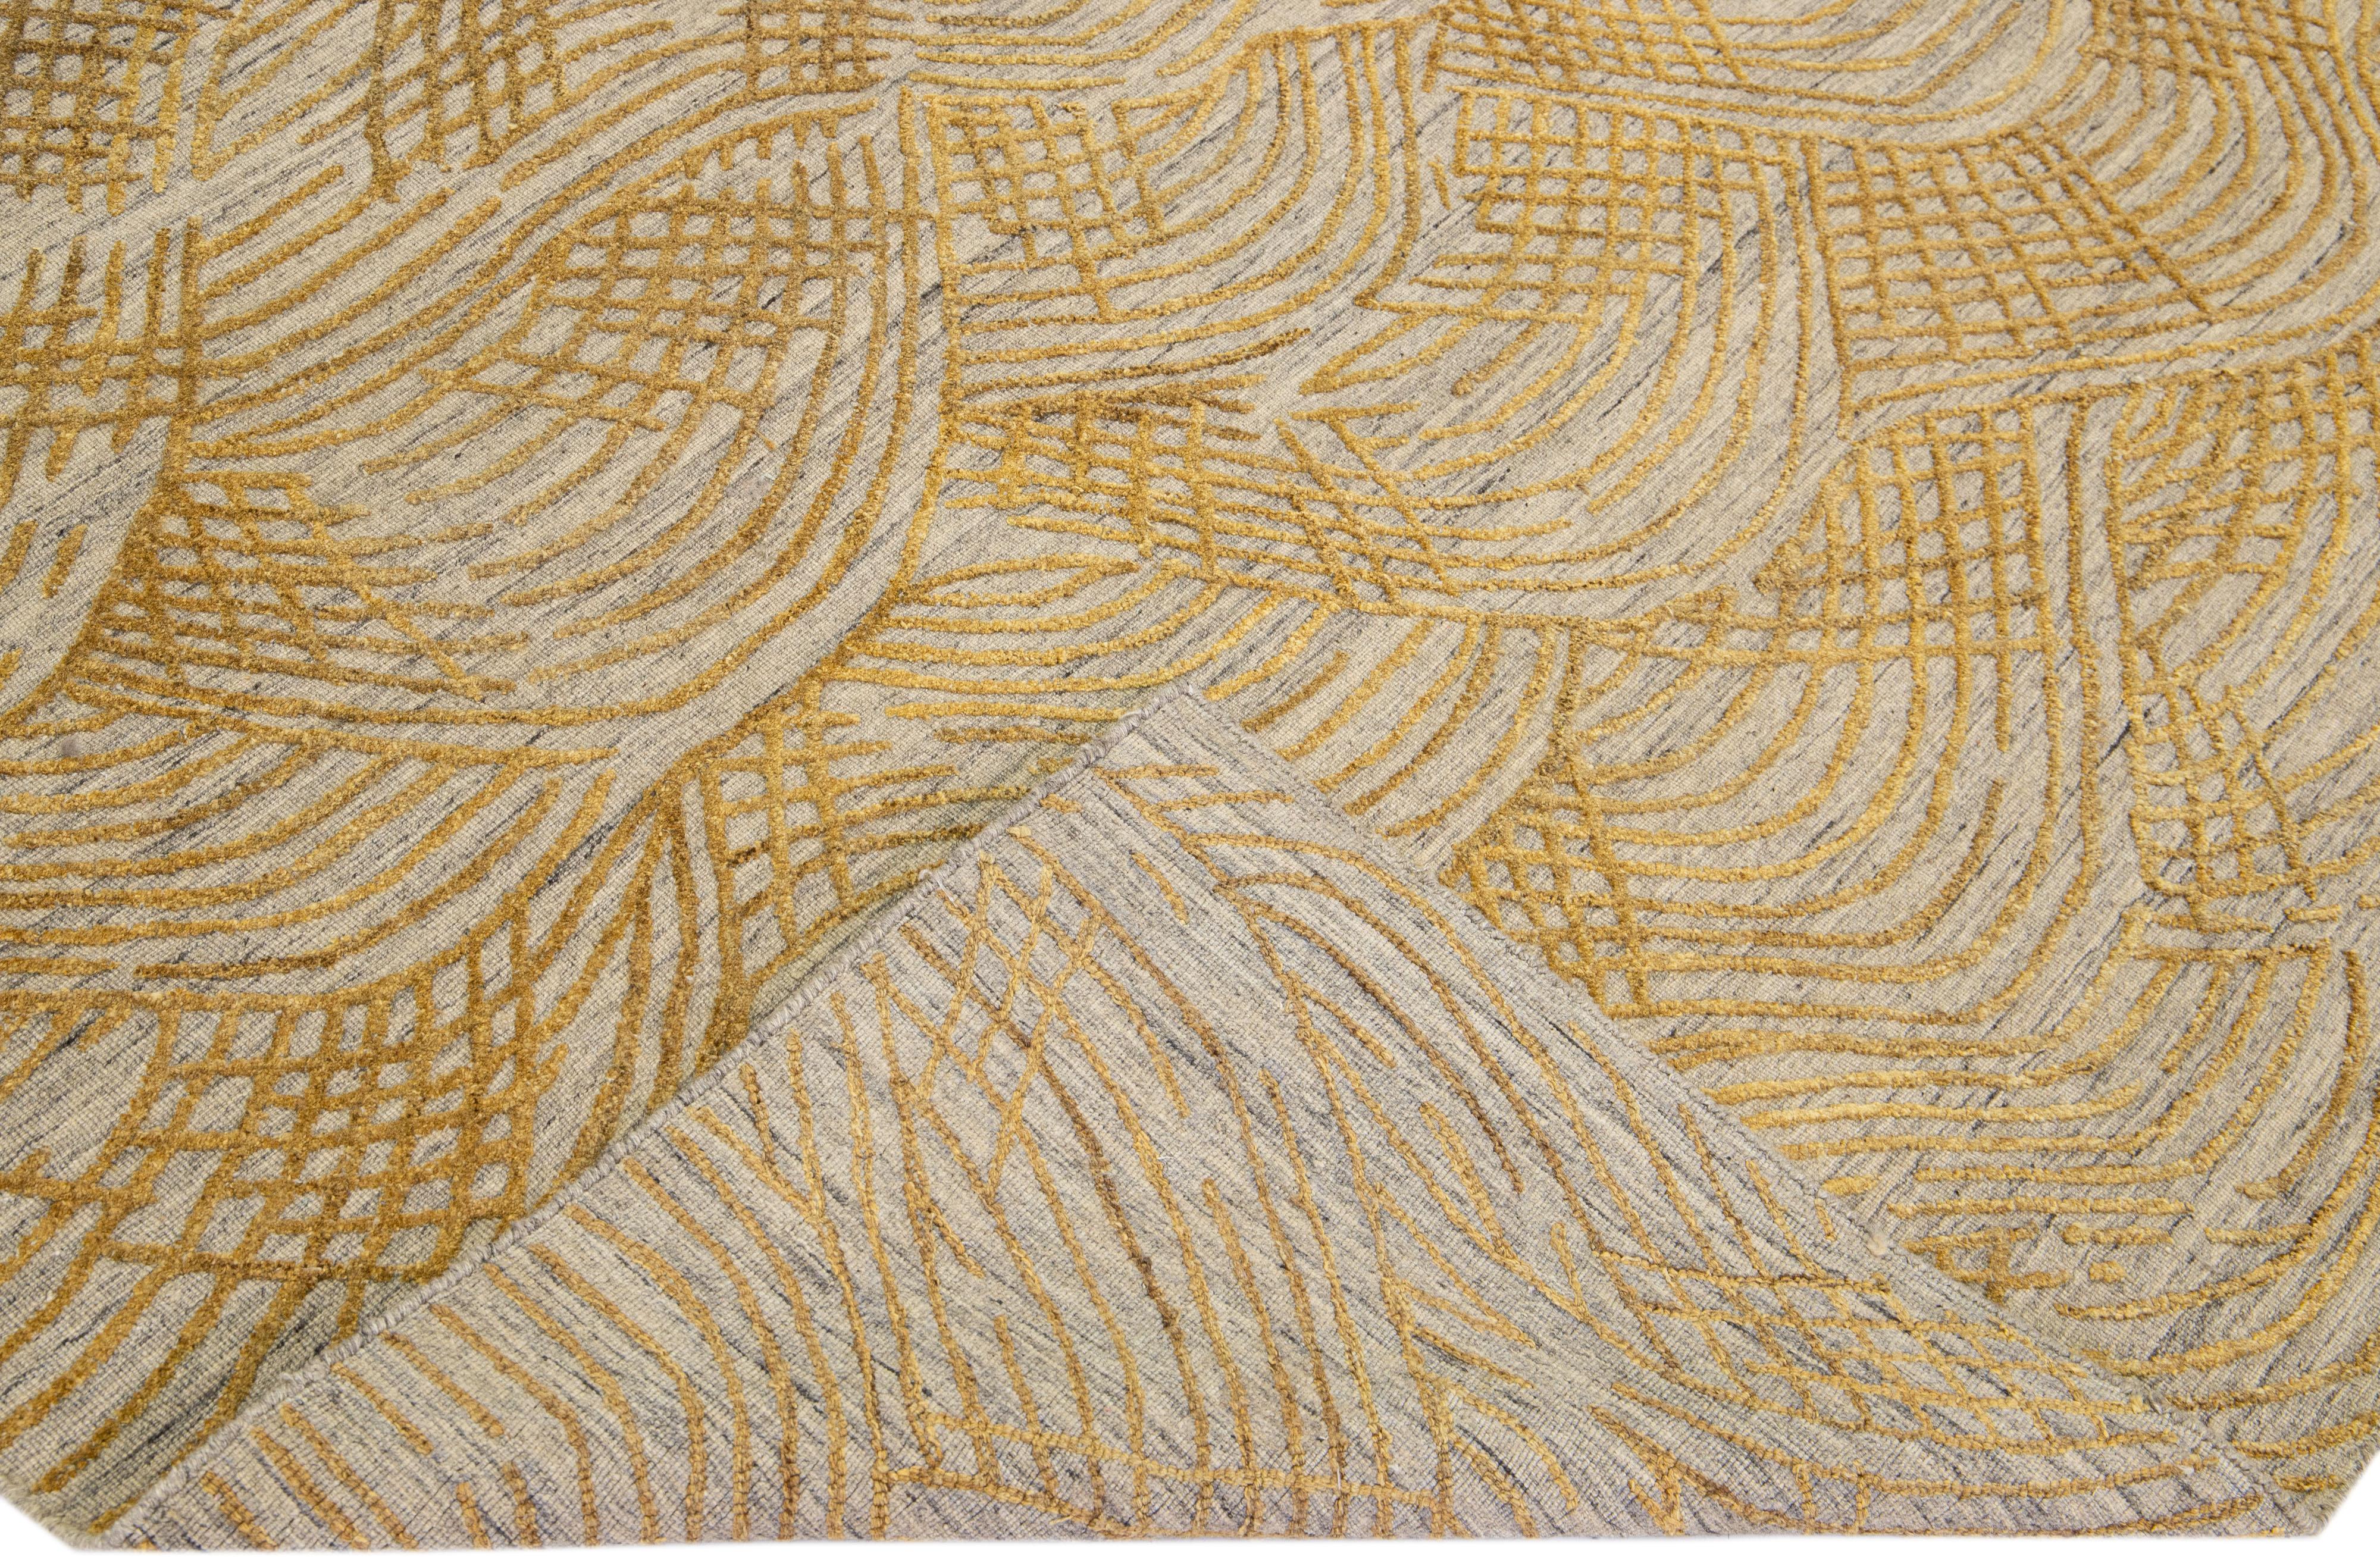 Magnifique tapis contemporain Thom Filicia Home Collection. Ce tapis indien tissé à la main est fait de laine et de viscose et présente un champ gris/beige et des accents dorés sur tout le motif. 
L'œil de Thom Filicia pour les détails exquis et